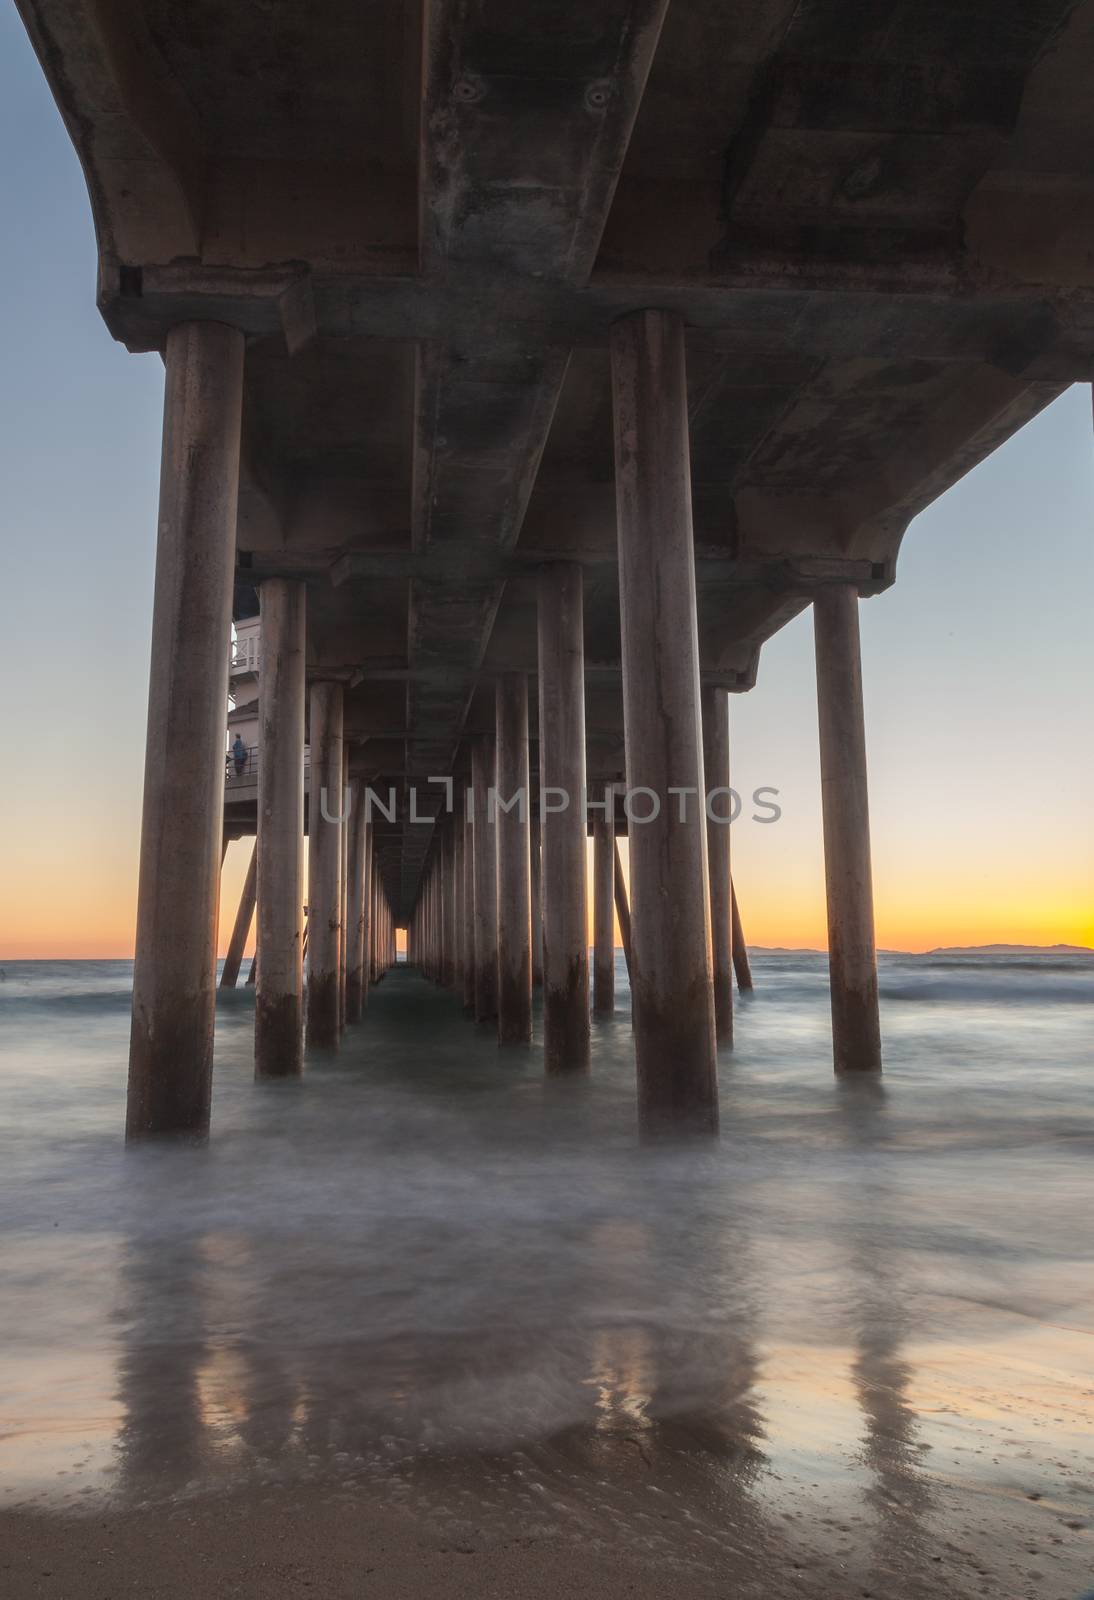 Under the Huntington Beach Pier by steffstarr